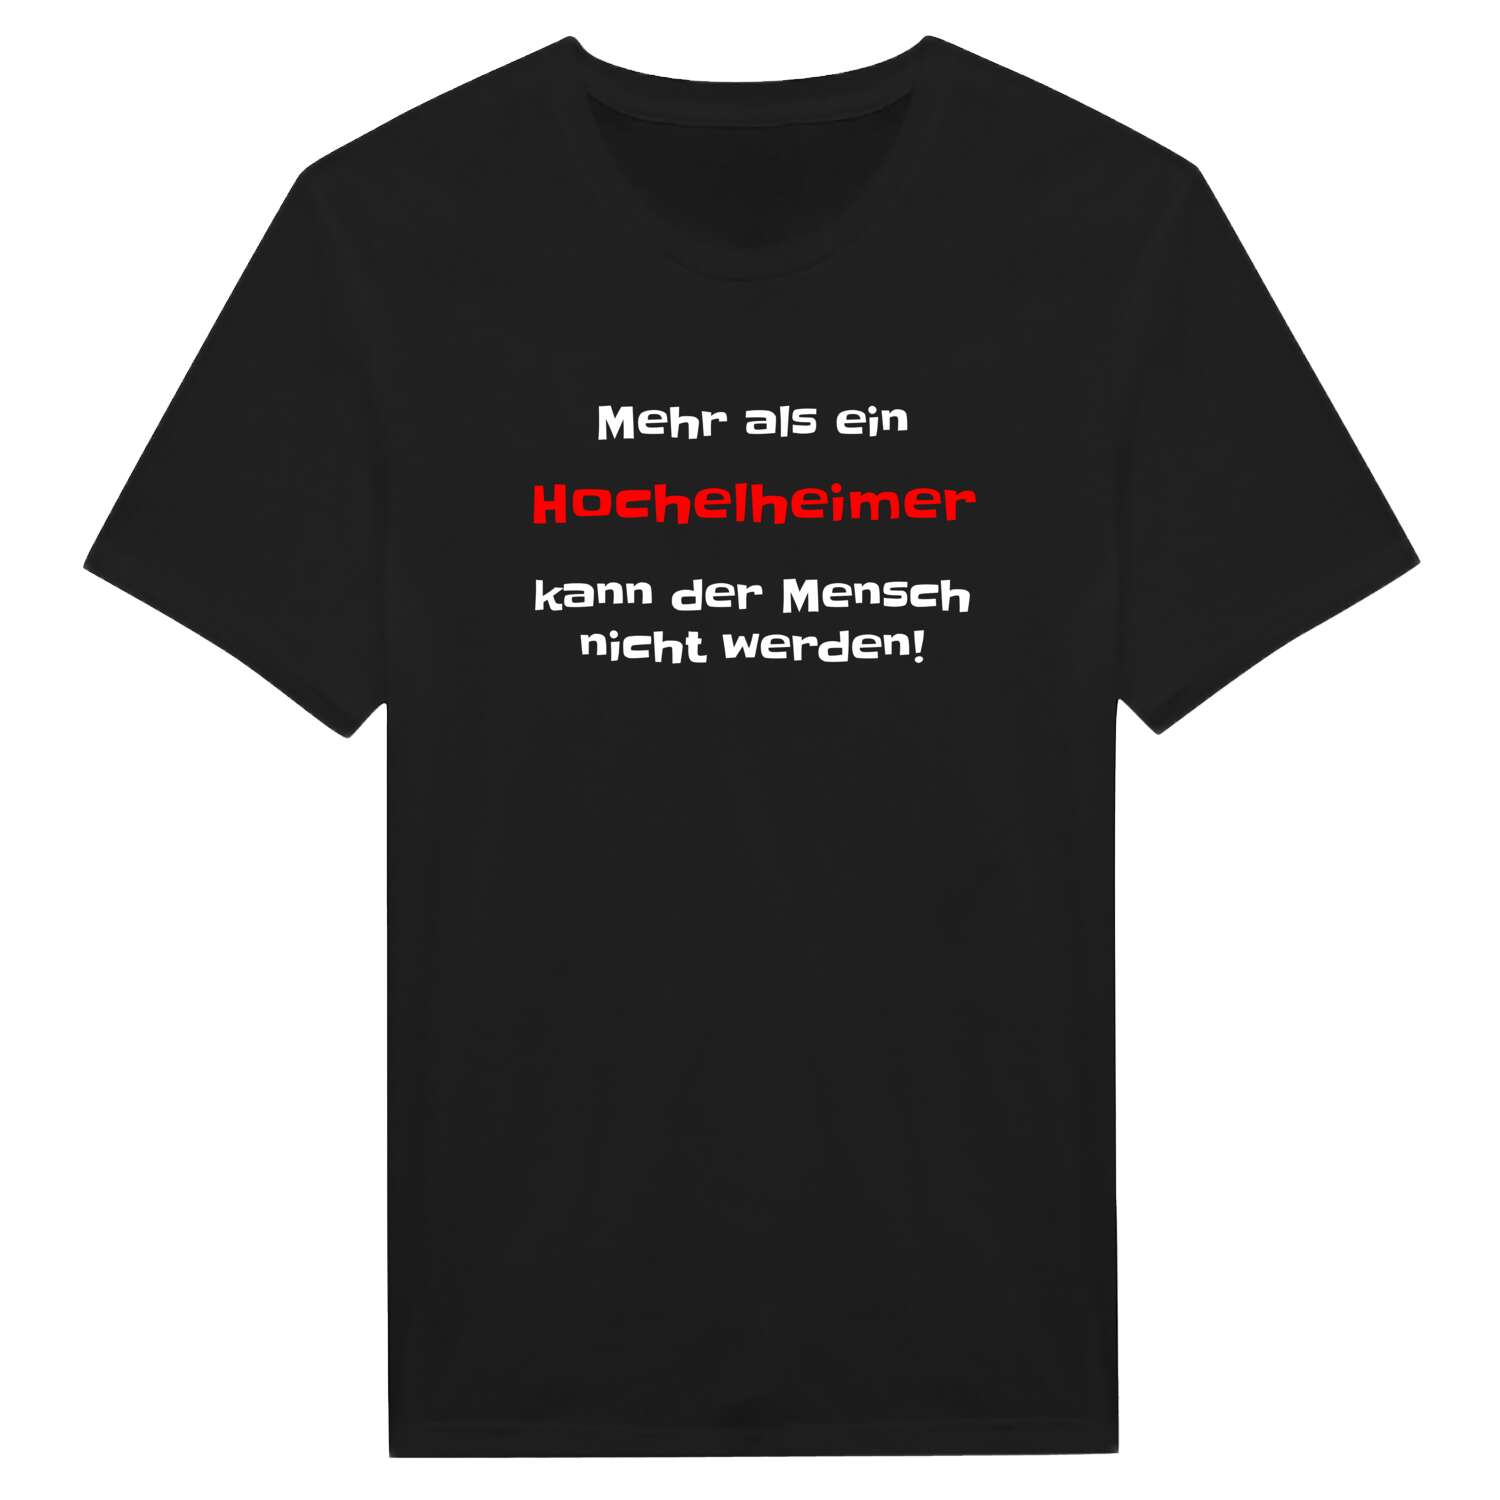 Hochelheim T-Shirt »Mehr als ein«